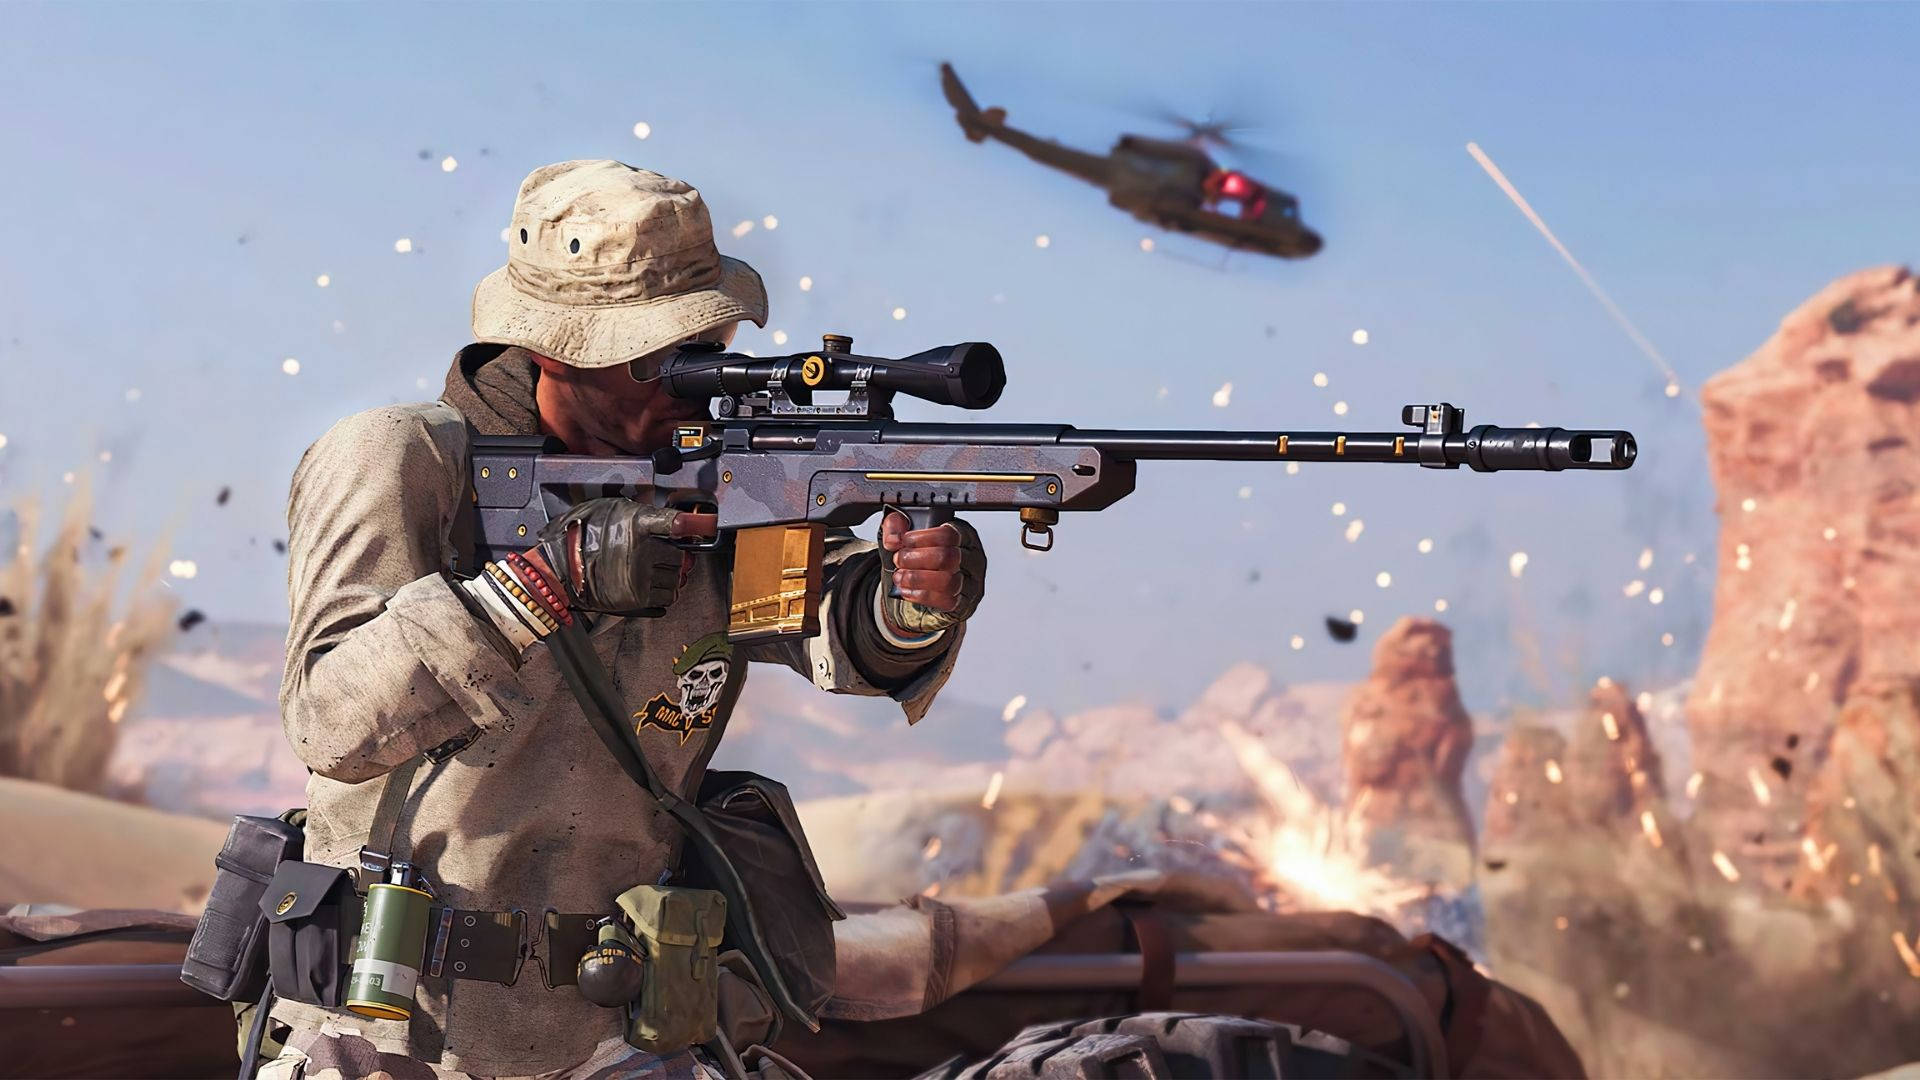 Sniper Soldier In War Background